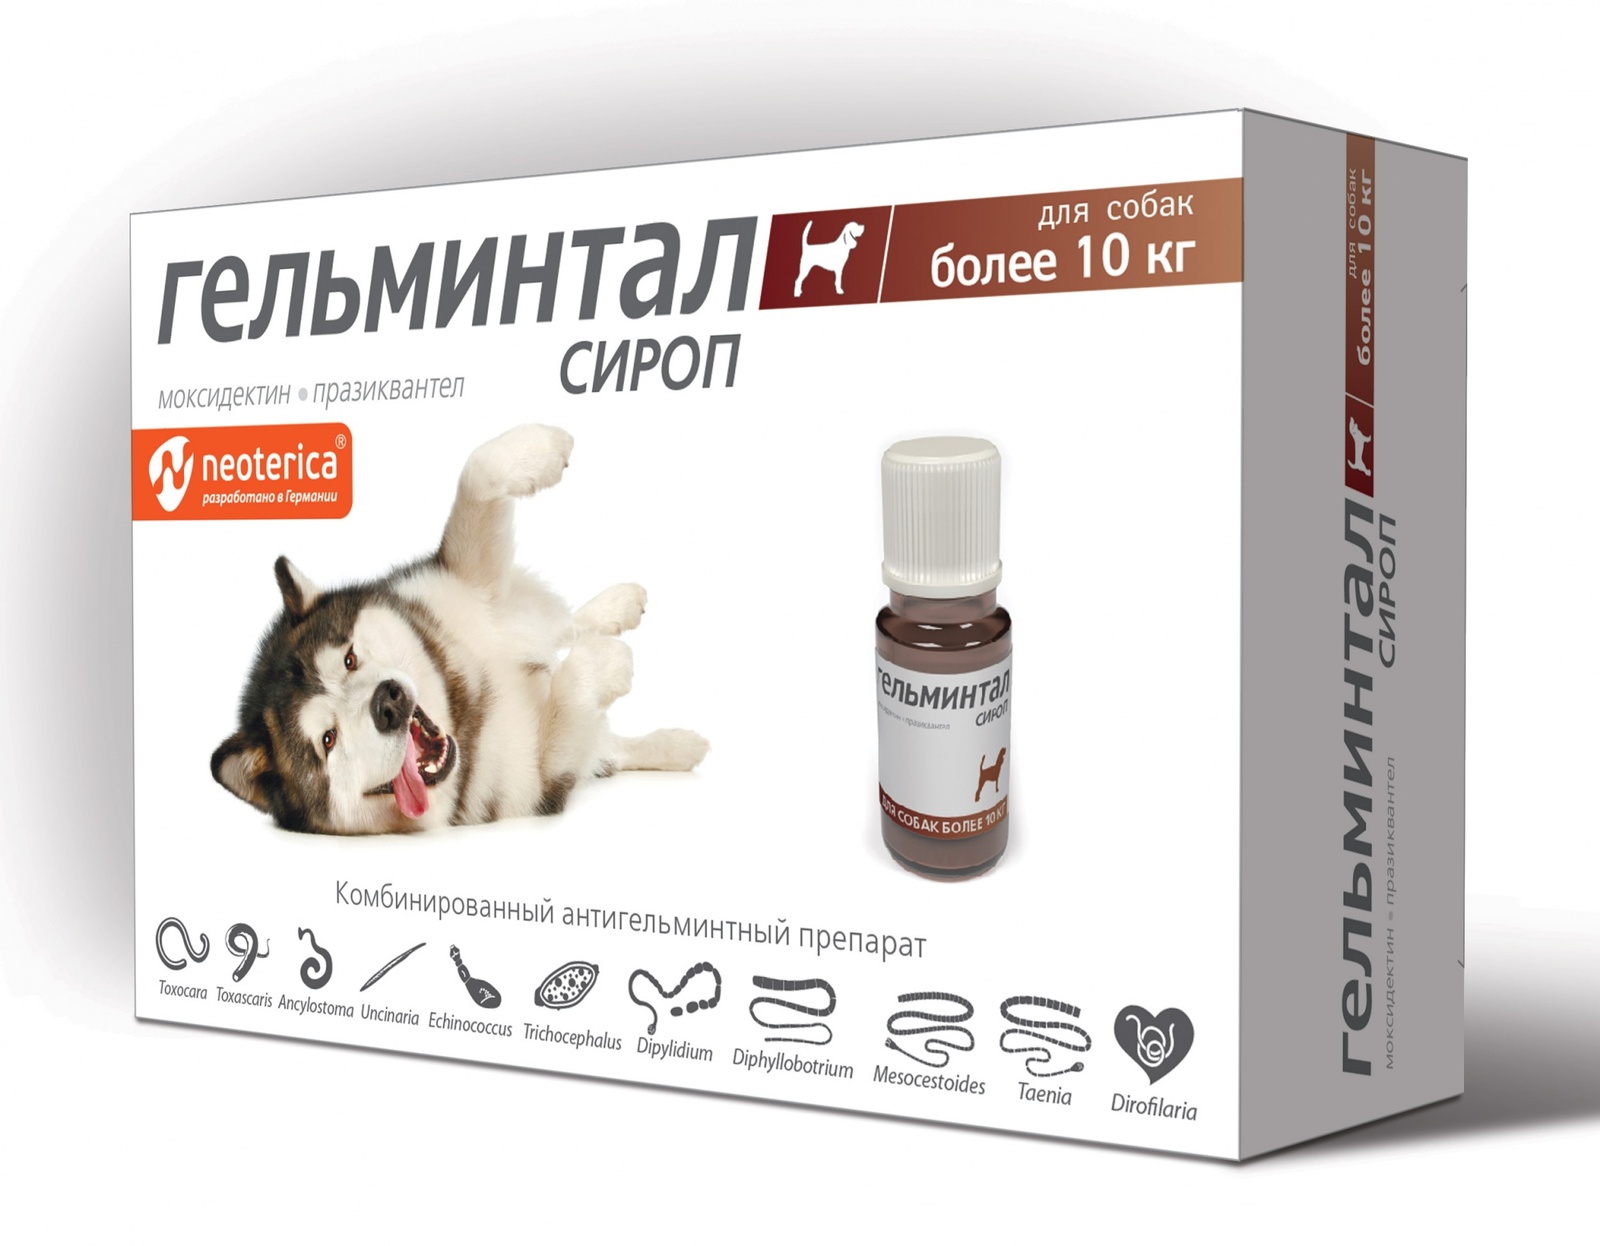 Гельминтал Гельминтал сироп от глистов для собак более 10 кг, 10 мл (60 г) гельминтал сироп для собак более 10 кг от ленточных и круглых гельминтов 10 мл